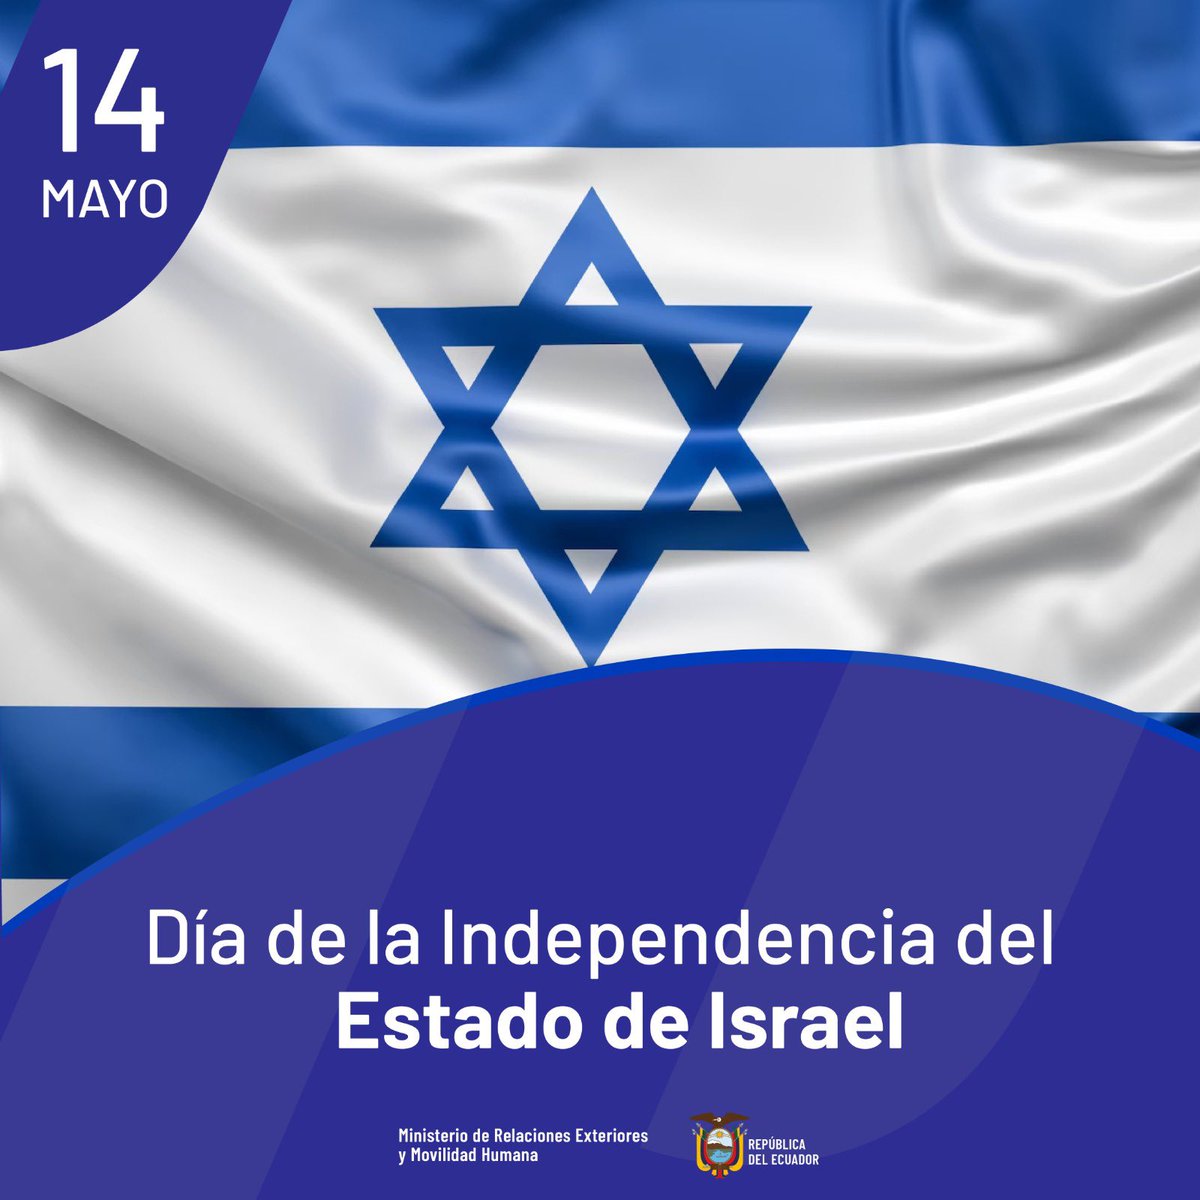 🇪🇨🤝🇮🇱 Desde la @CancilleriaEc, extendemos un cordial saludo a Israel en su Día de la Independencia. Reafirmamos el compromiso de fortalecer nuestros lazos de amistad y cooperación en beneficio de ambos países.